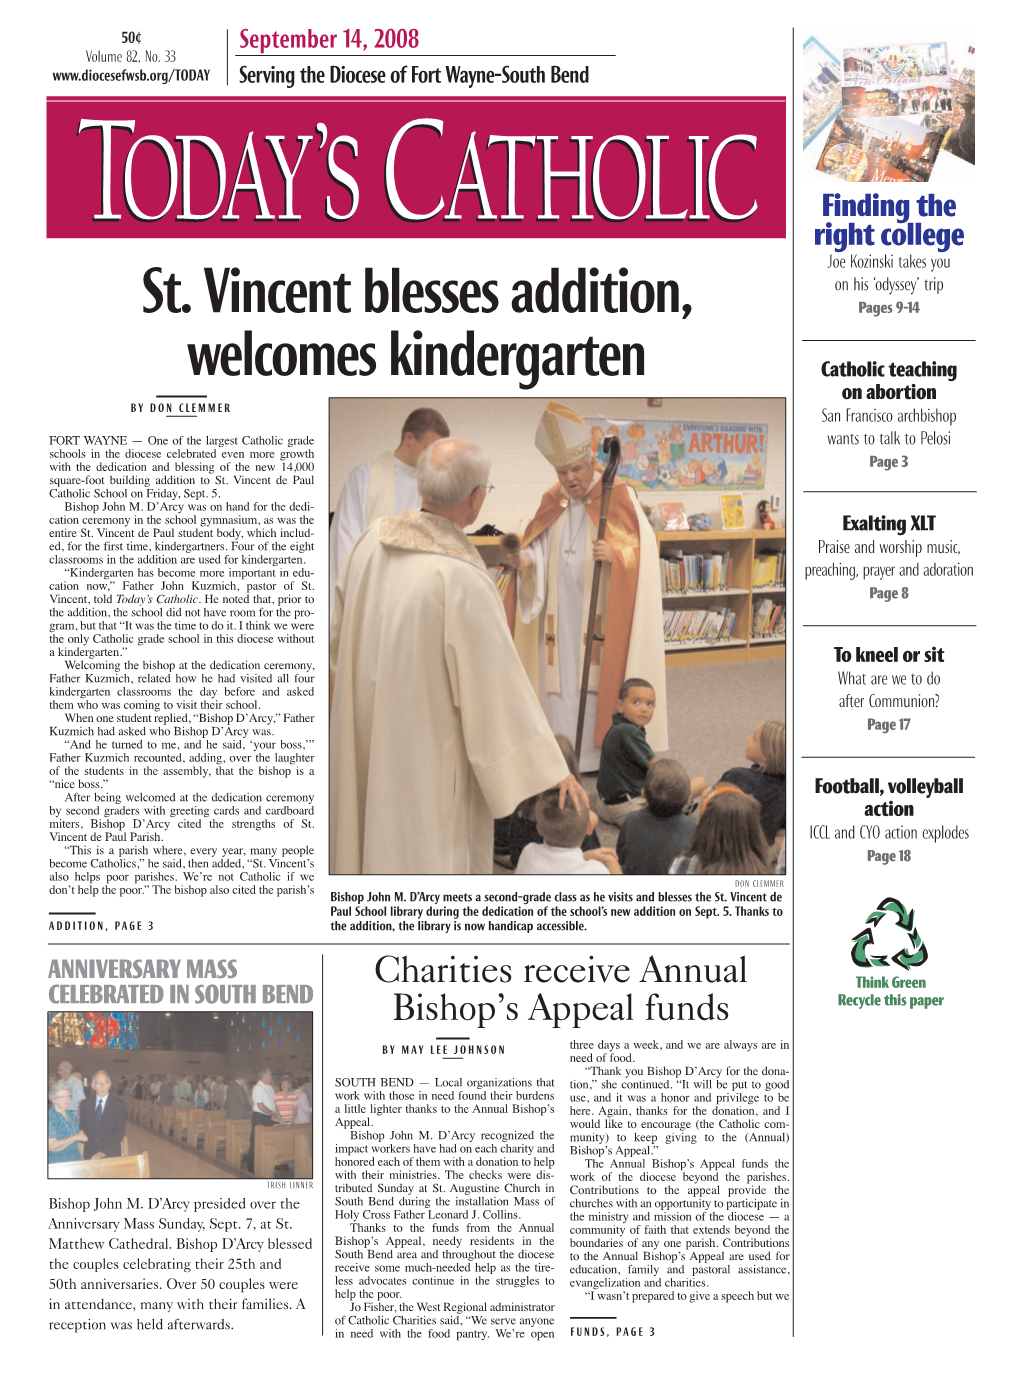 St. Vincent Blesses Addition, Welcomes Kindergarten